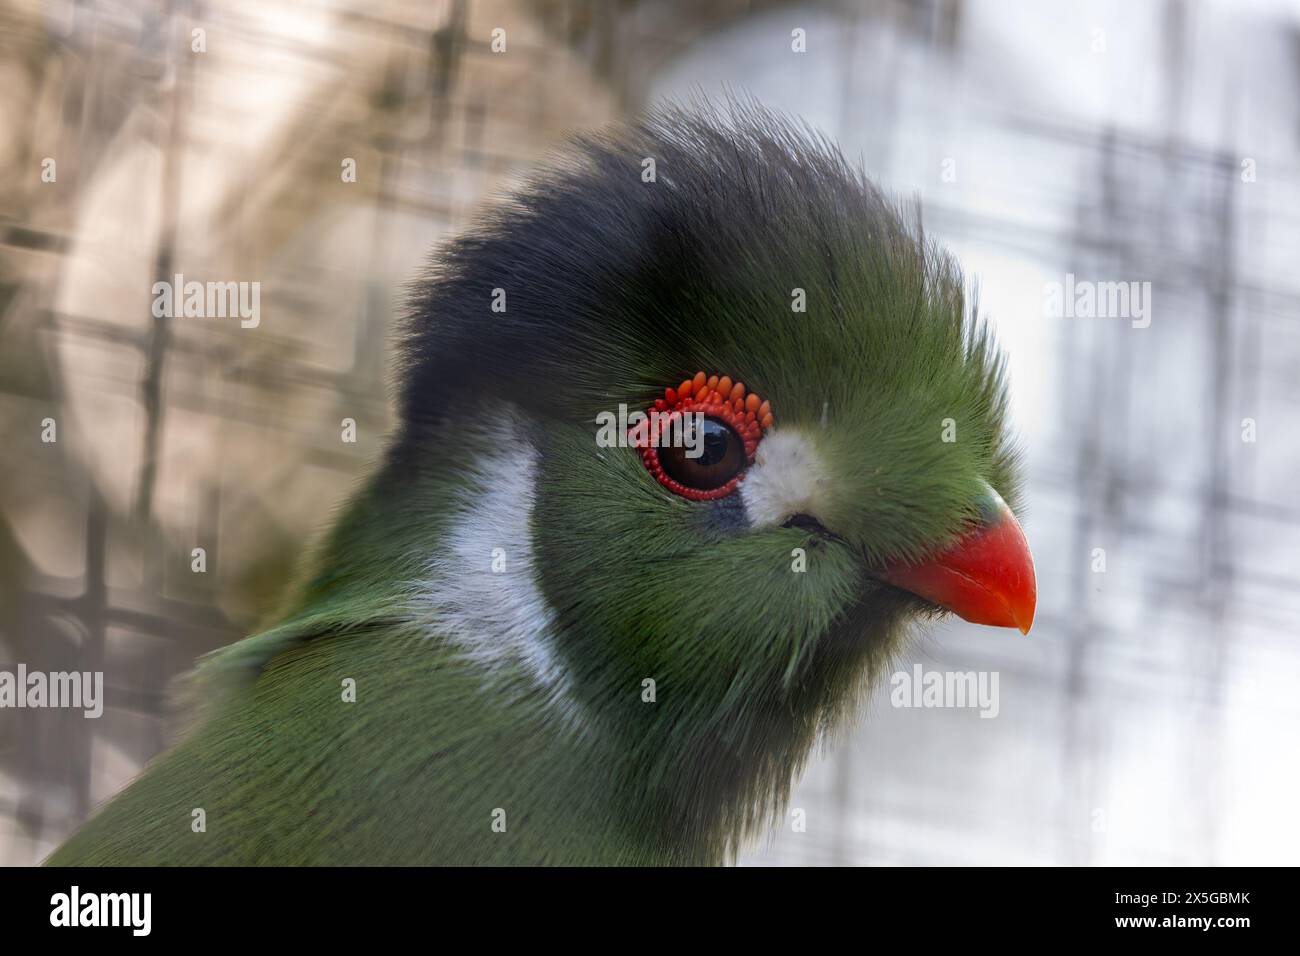 Splendido uccello di medie dimensioni con piumaggio verde brillante, becco rosso e cerotti alari cremisi. Si trova nelle lussureggianti foreste pluviali e nei boschi del sub-sahariano Foto Stock